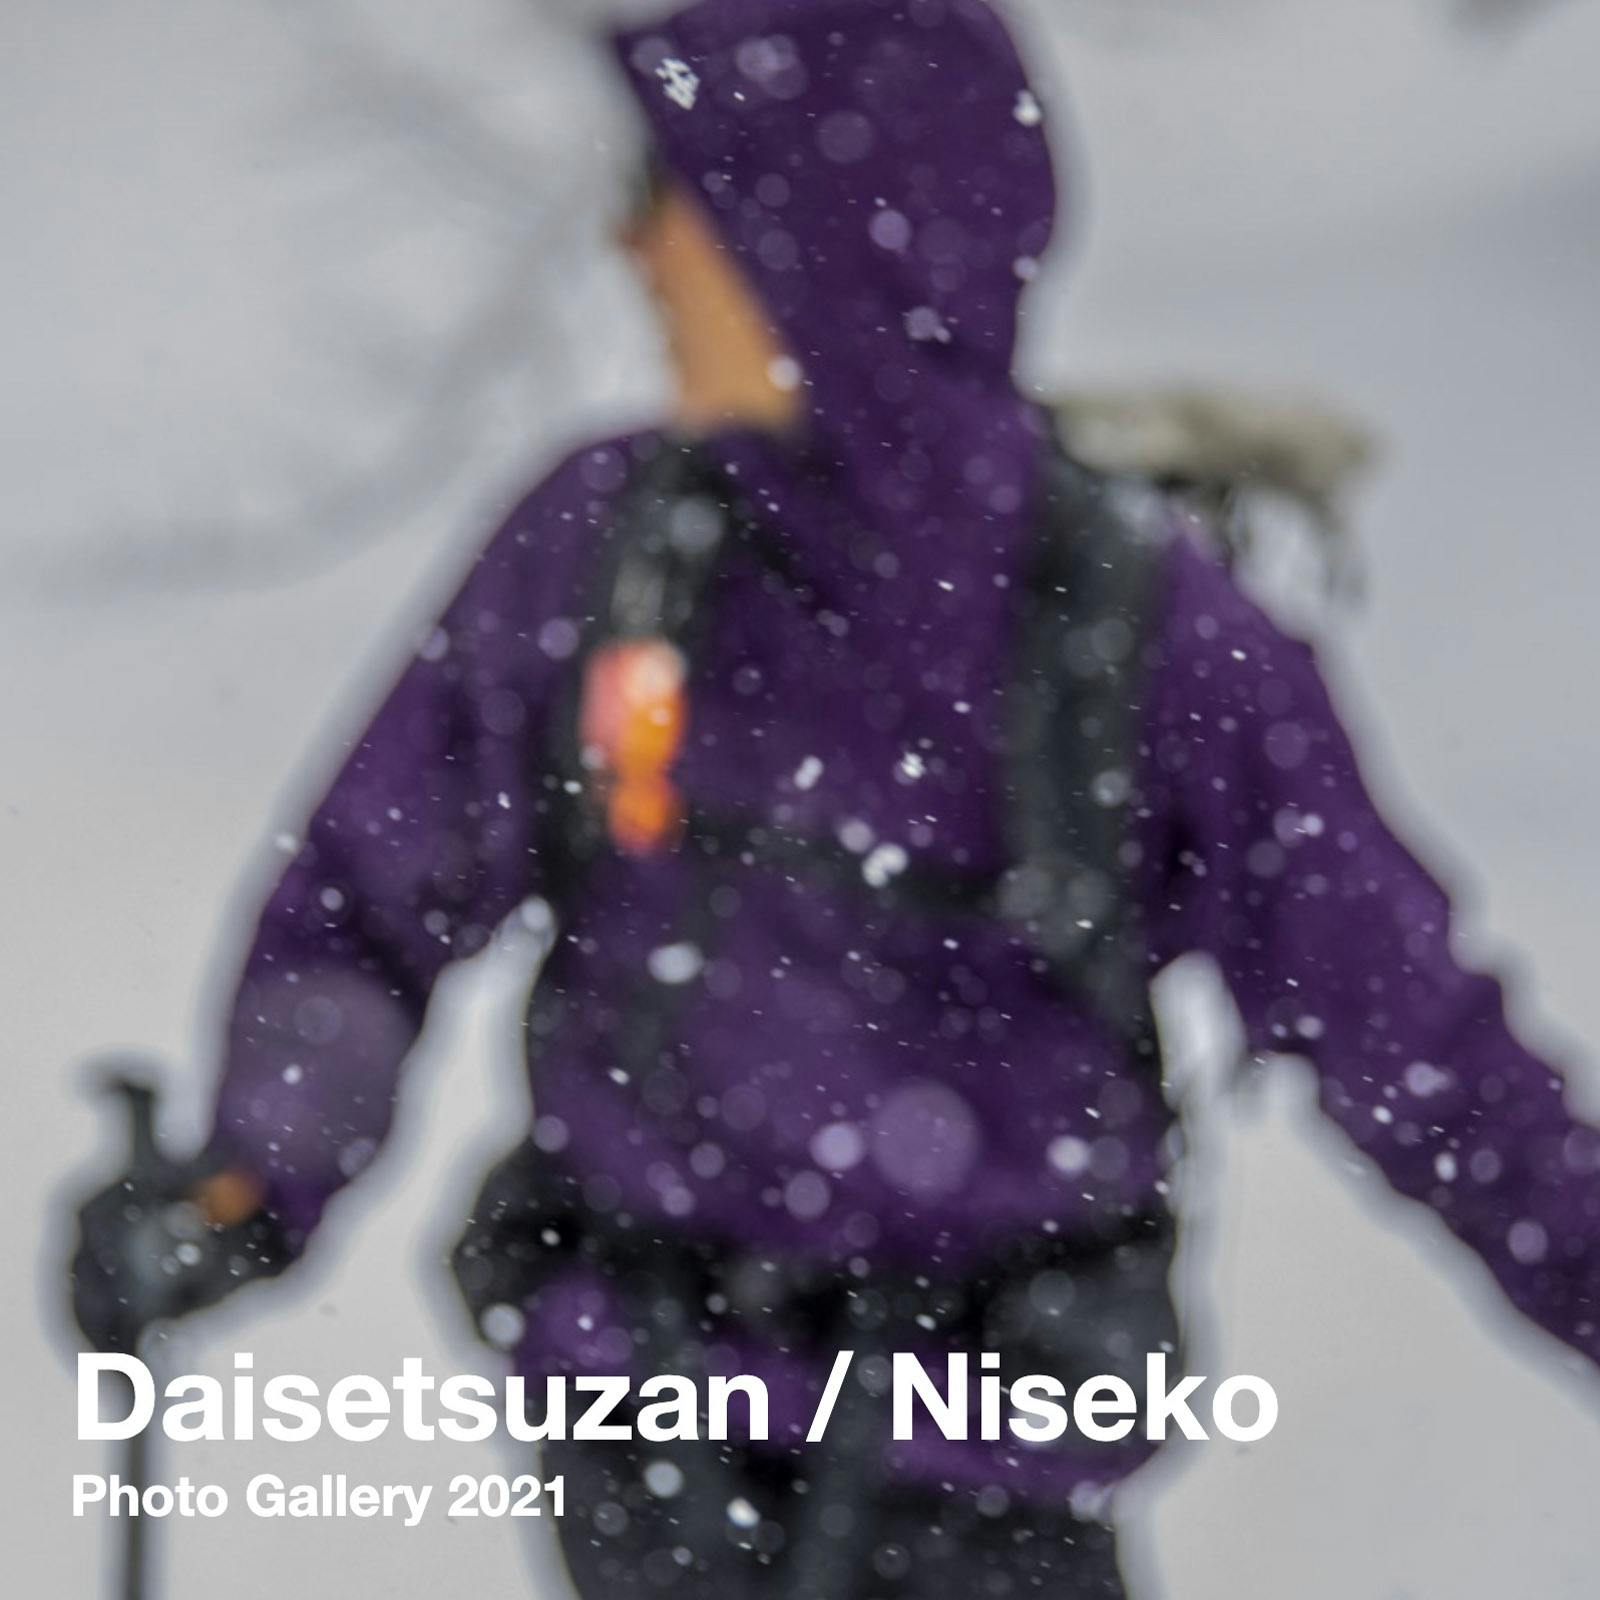 Daisetsuzan / Niseko